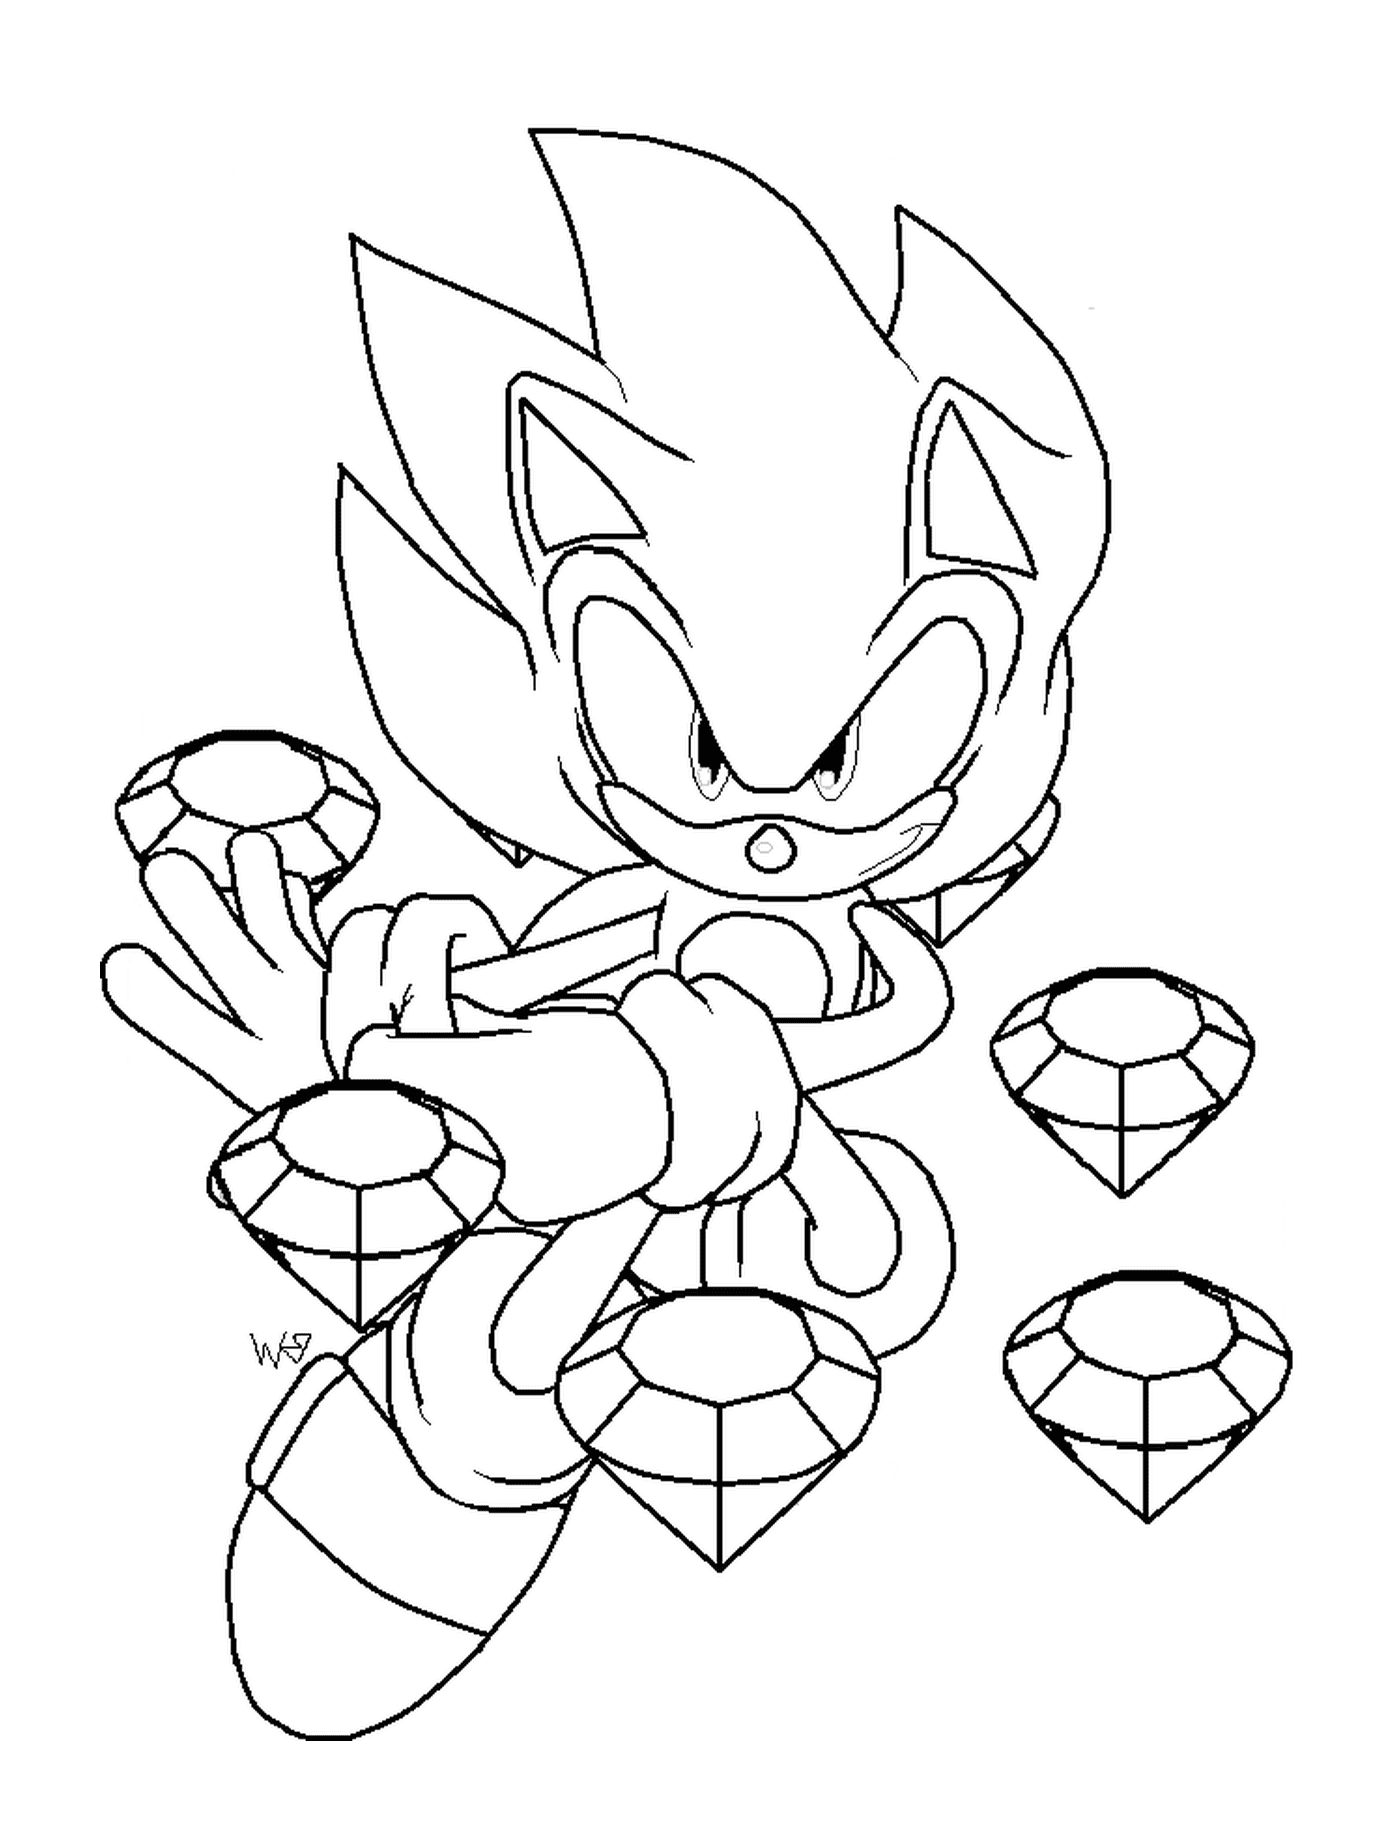  Super poderoso Sonic 